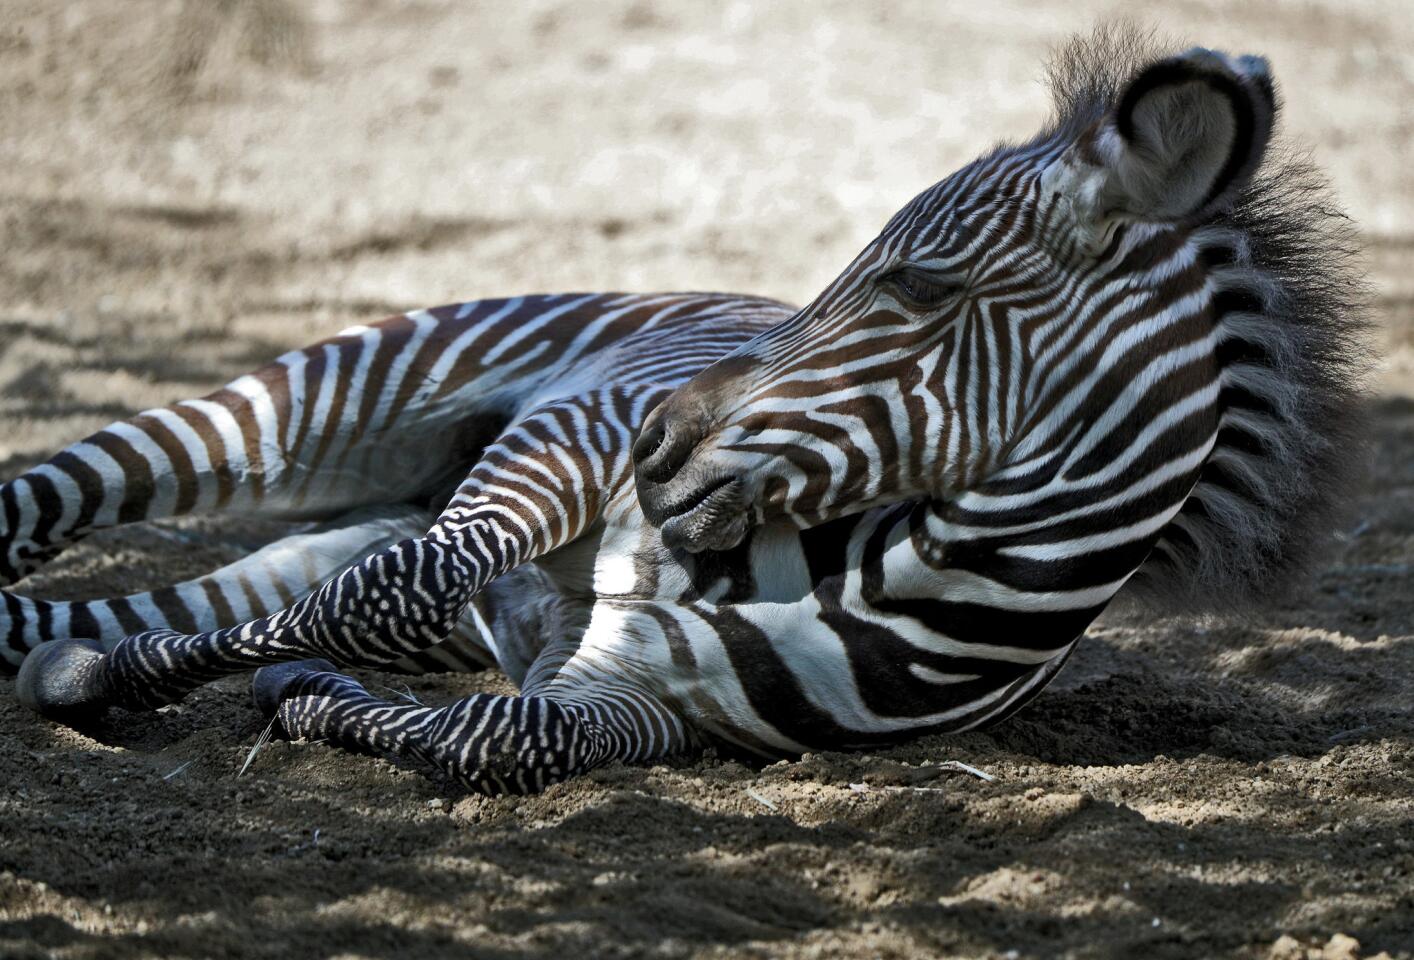 Grevy's Zebra with cut in leg - ZooChat